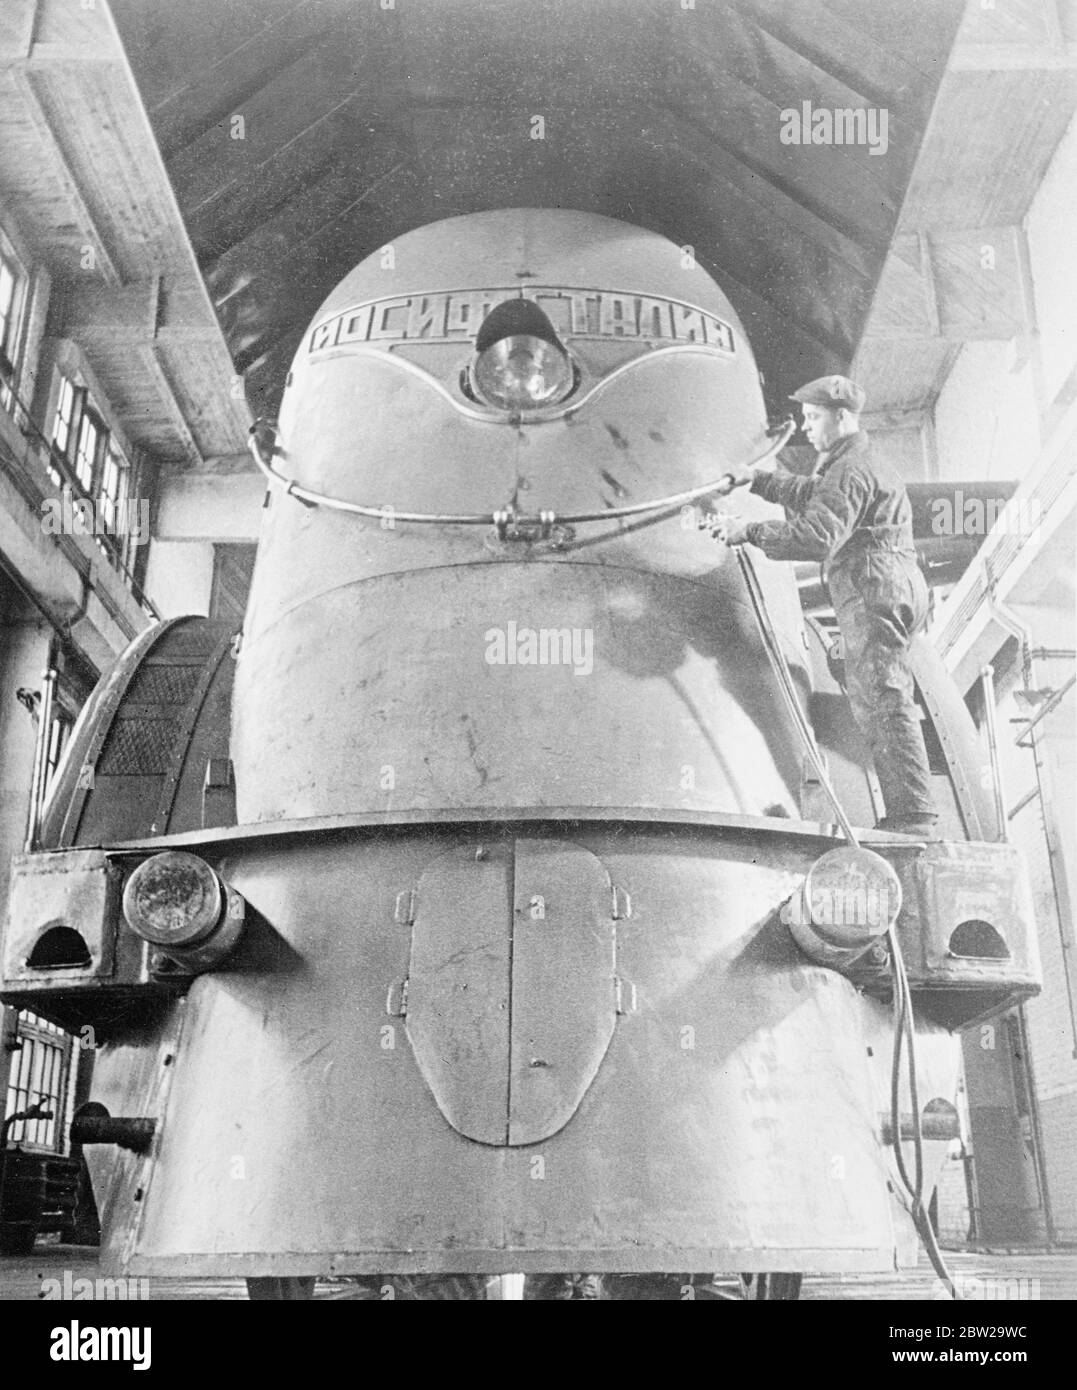 Construction de la locomotive soviétique simplifiée 'Joseph Staline' à la Révolution d'octobre travaux de locomotive dans la ville de Voroshilovgrad (anciennement Lugansk) en Ukraine soviétique. Cette locomotive avait une vitesse prévue de près de 90 milles à l'heure. Banque D'Images